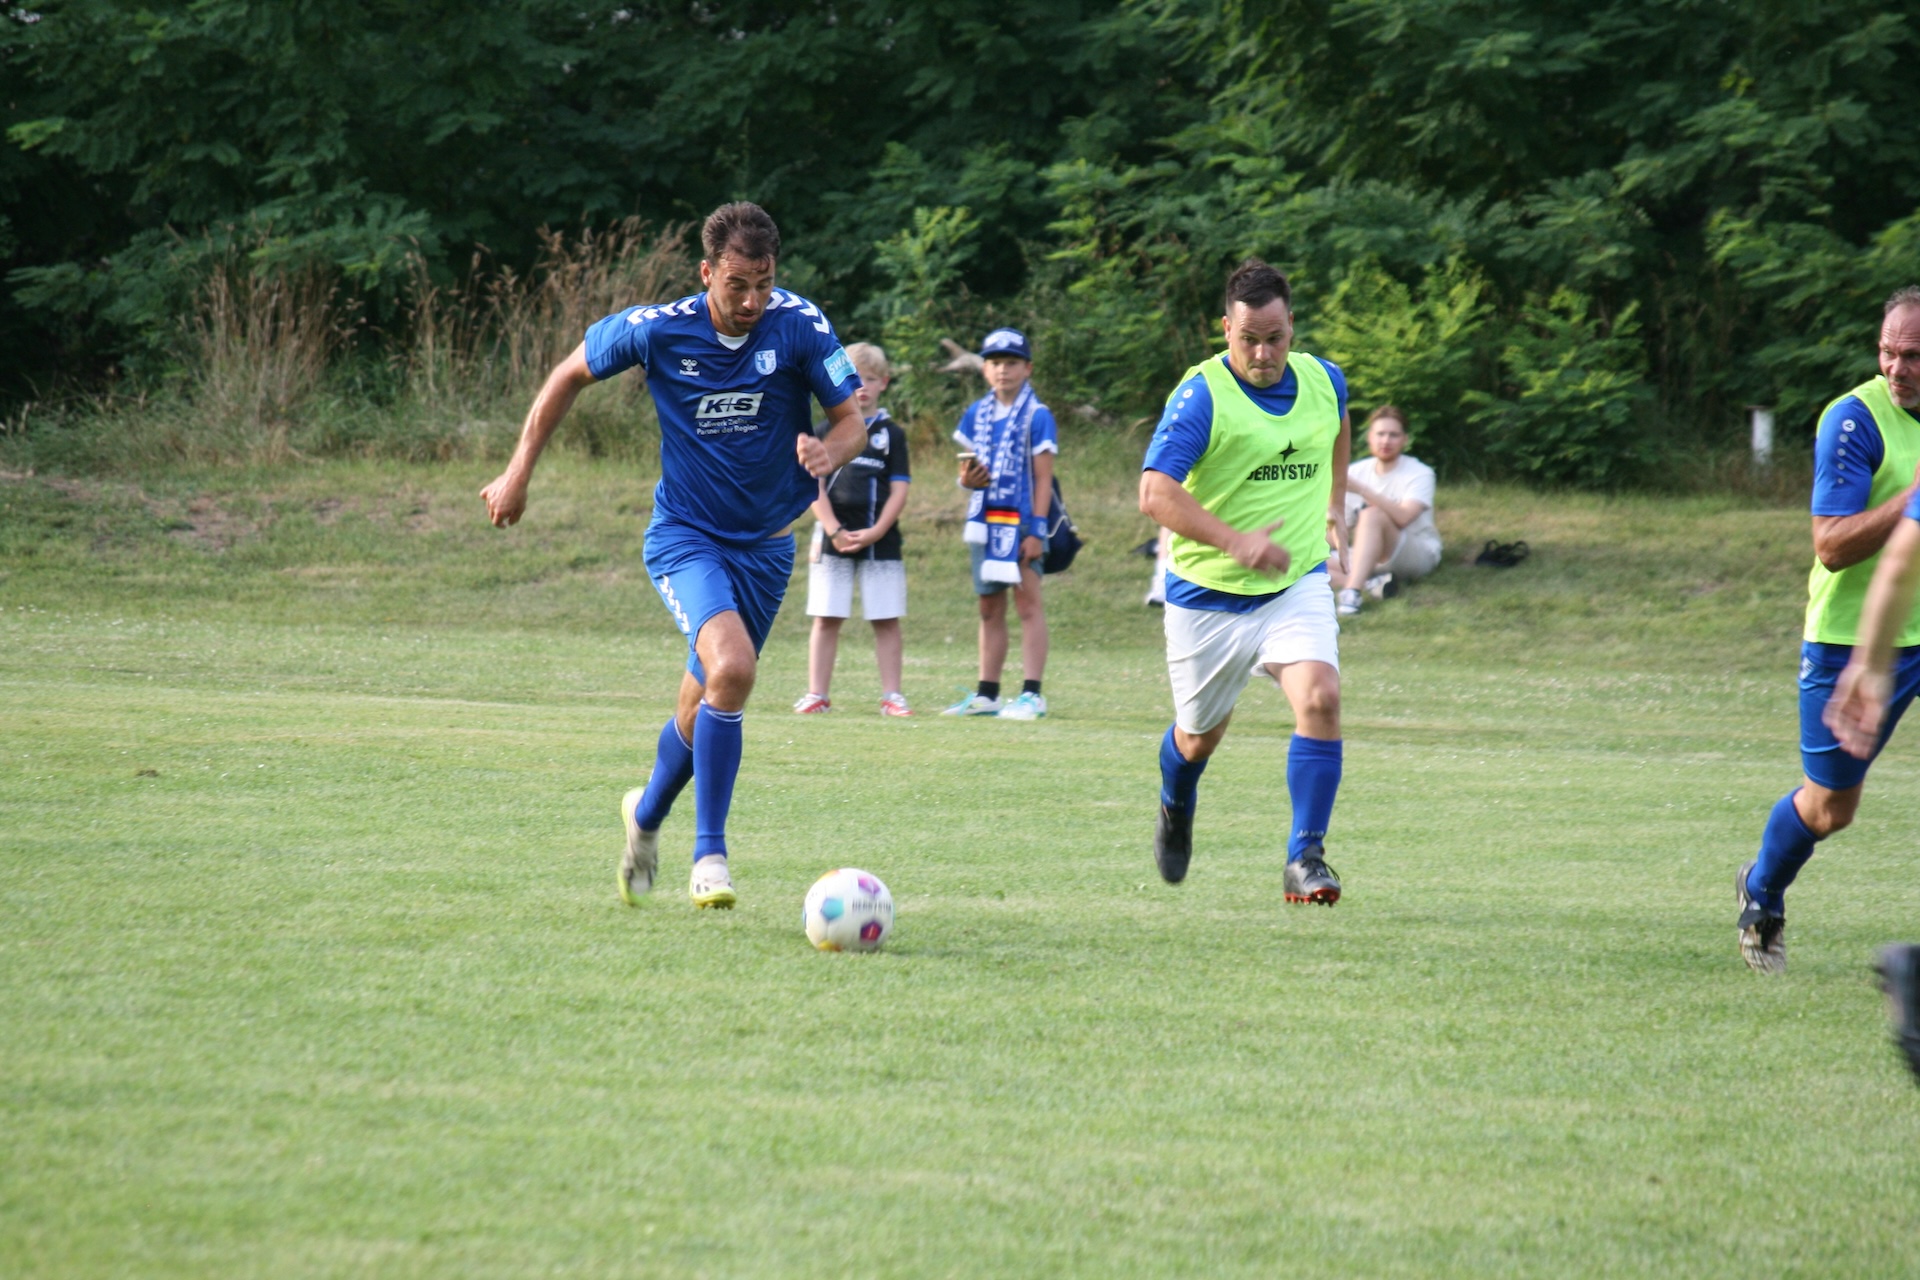 Christian Beck (am Ball) bestritt sein erstes Spiel für die Traditionsmannschaft.